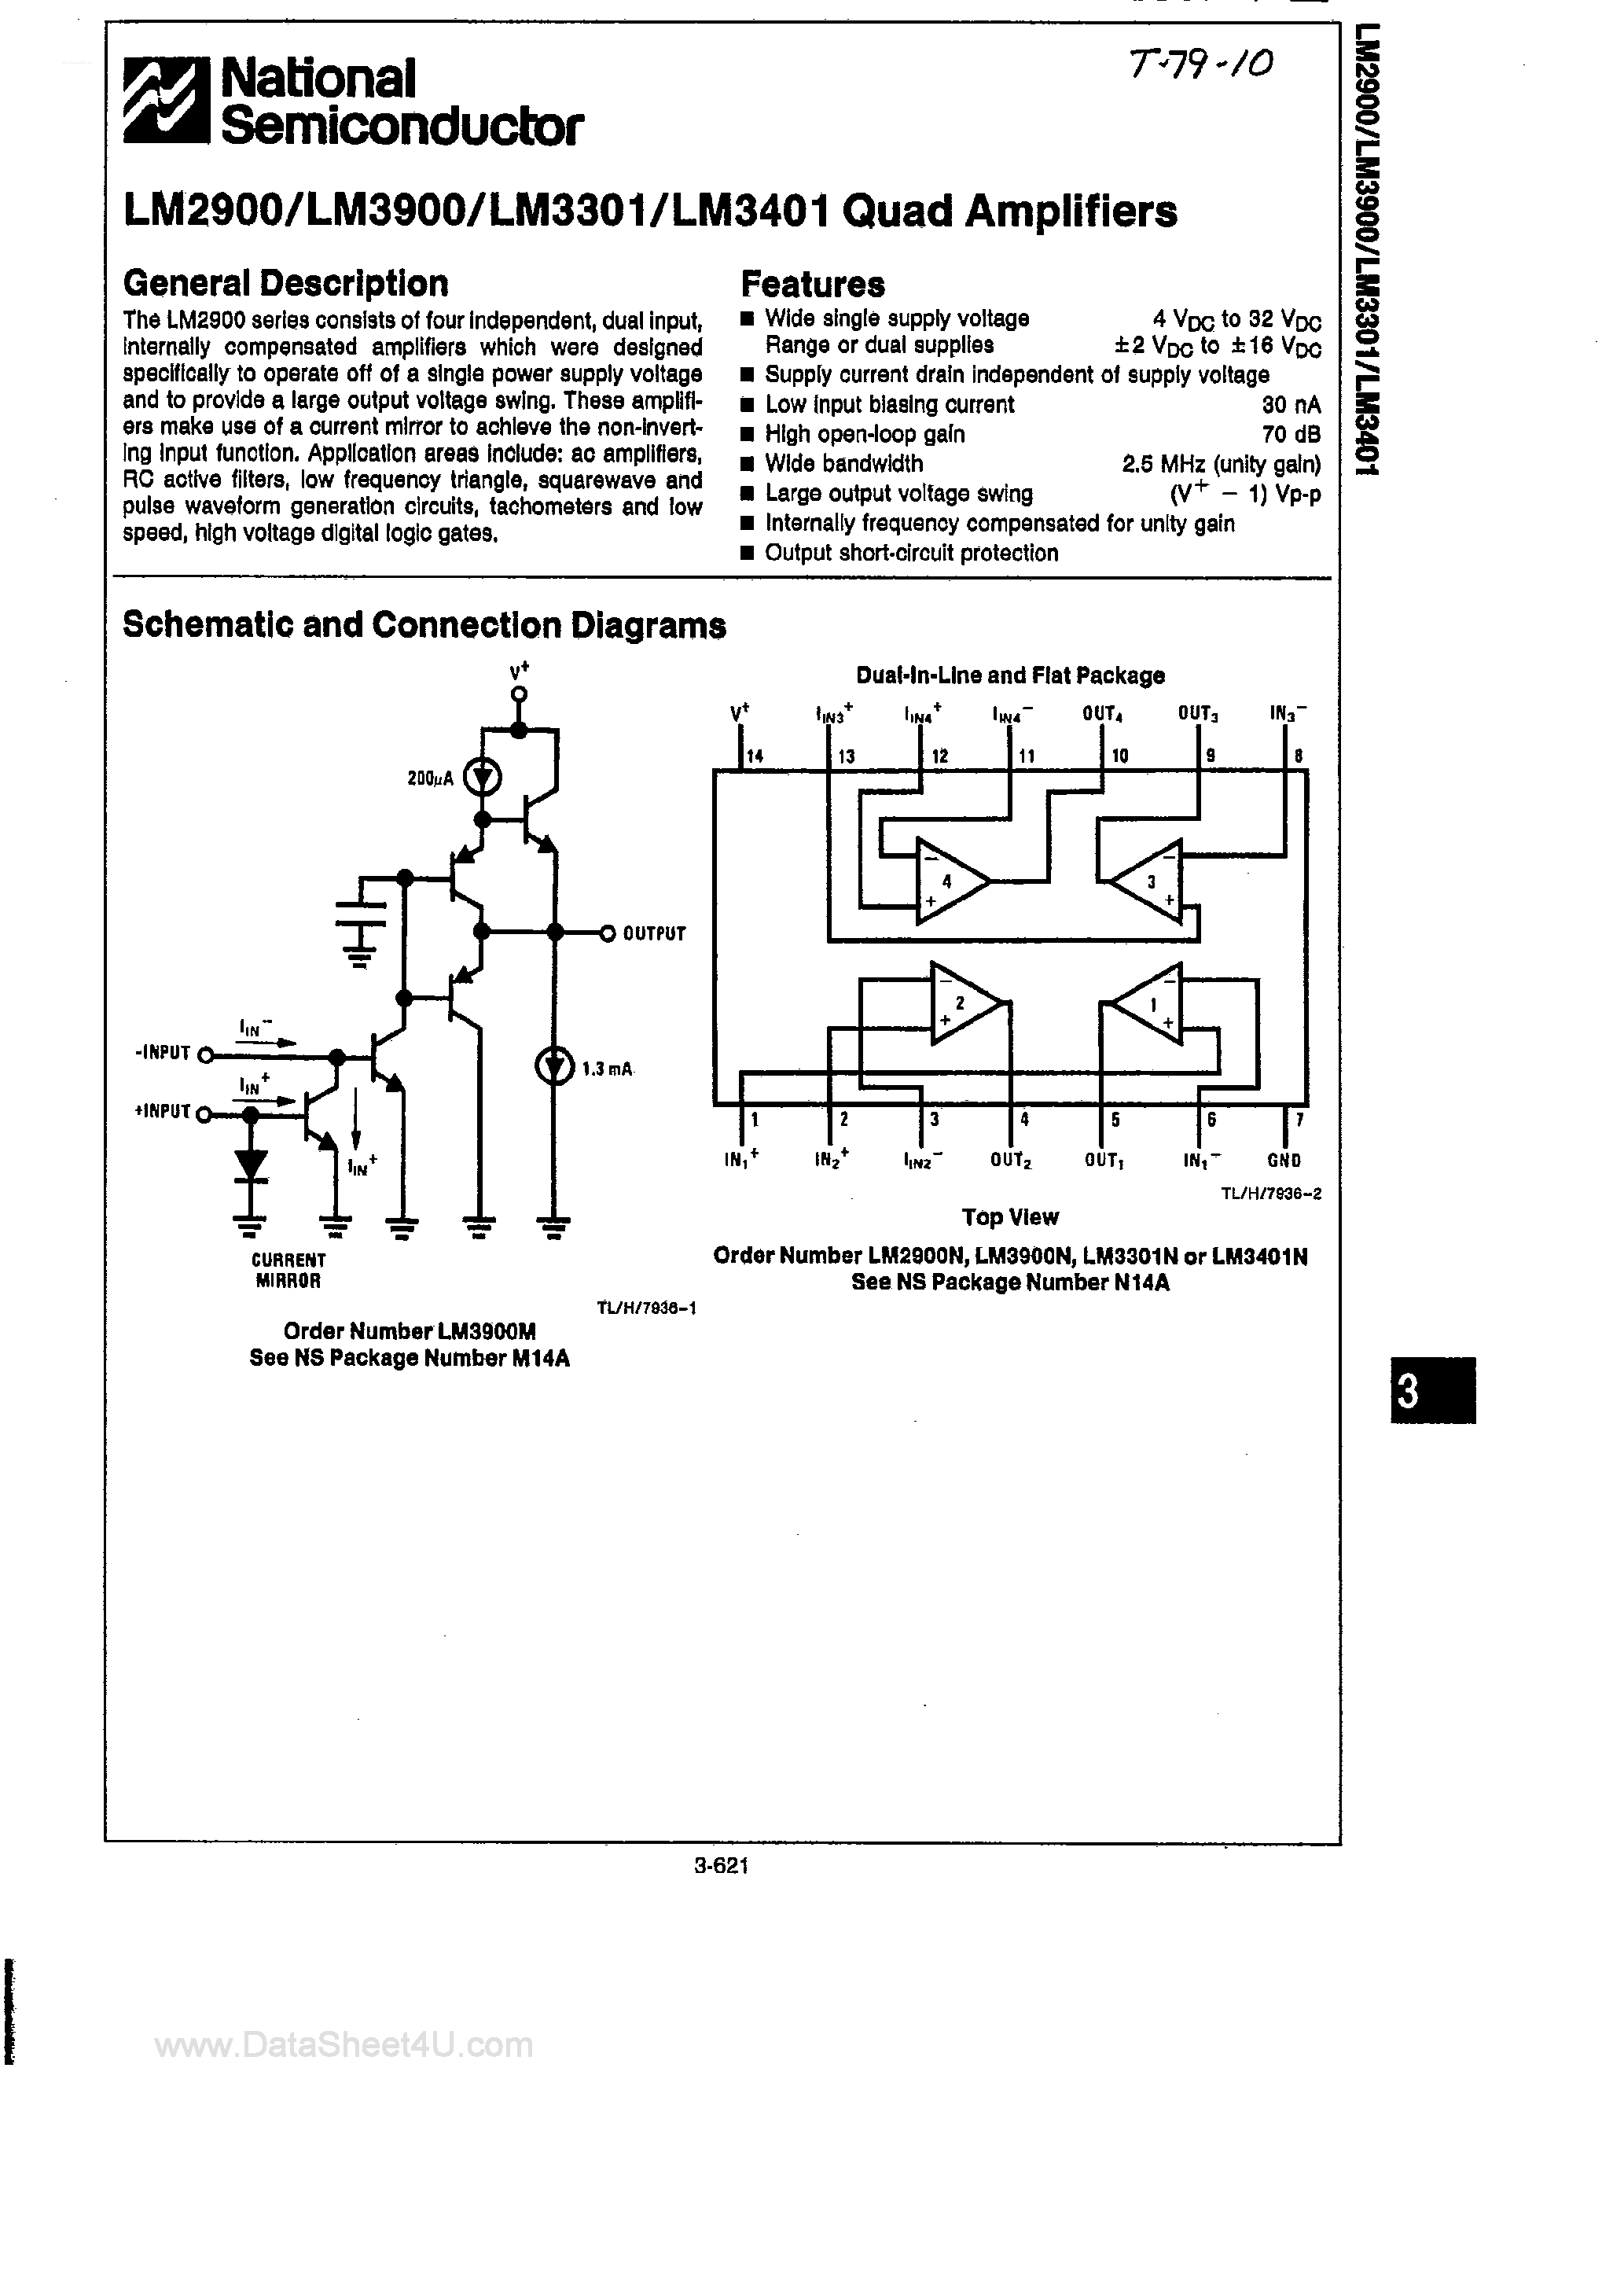 Даташит LM3401 - (LM3900 / LM3901 / LM3401) Quad Amplifiers страница 1